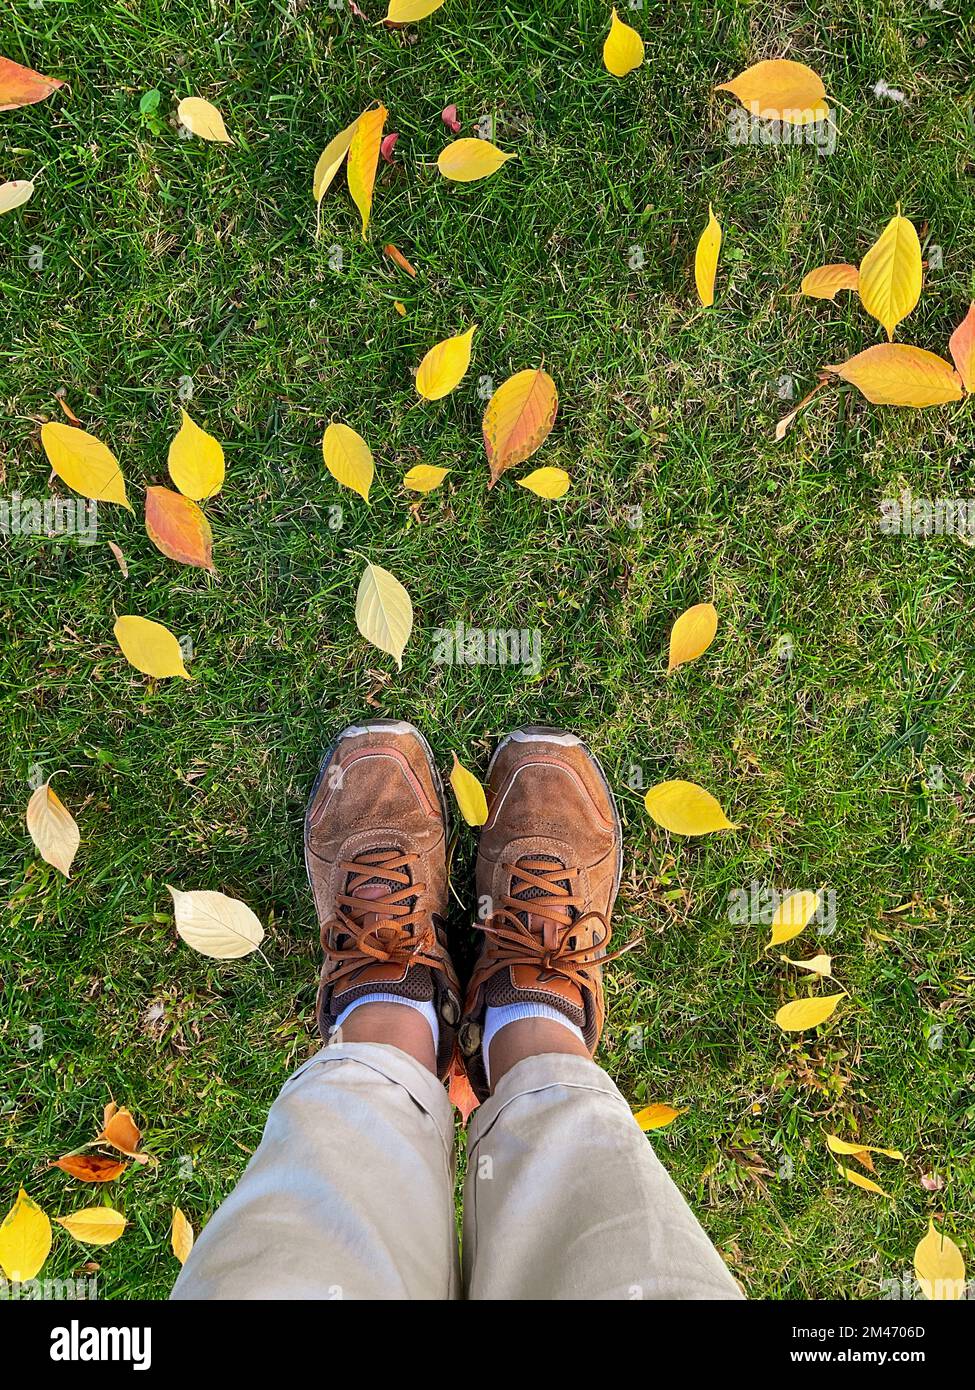 hojas pequeñas amarillas caídas de forma ovalada, superficie del suelo del bosque de otoño Foto de stock